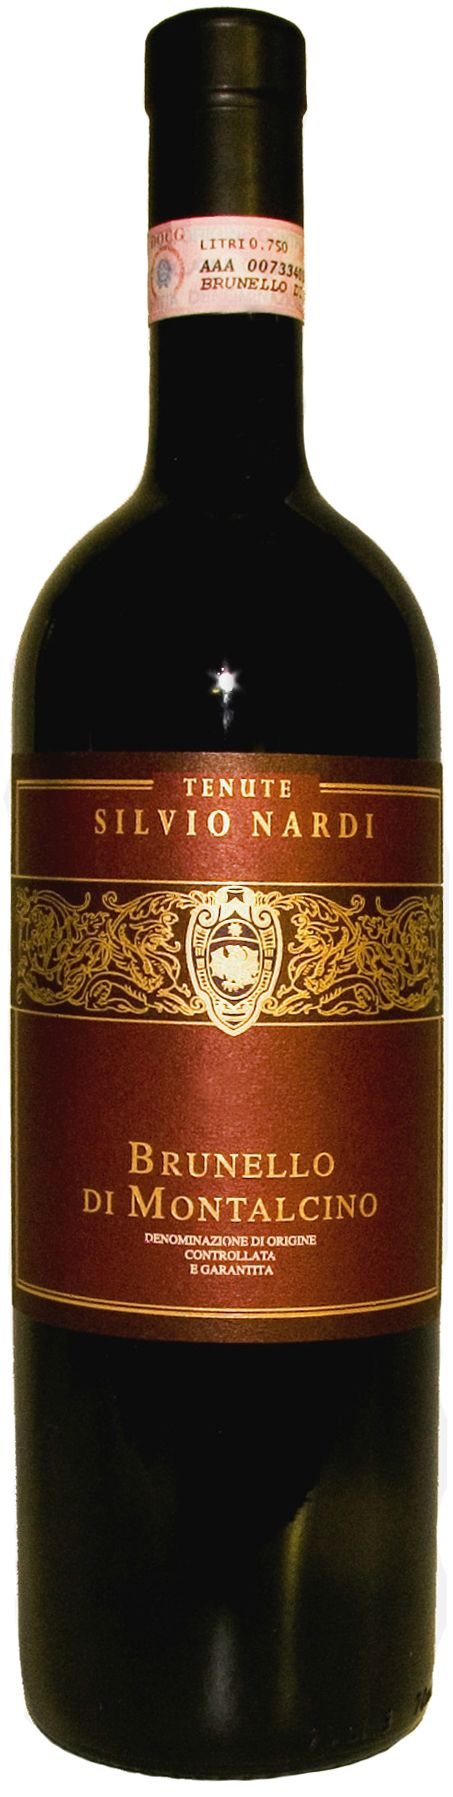 Tenute Silvio Nardi, Brunello Di Montalcino, 2000